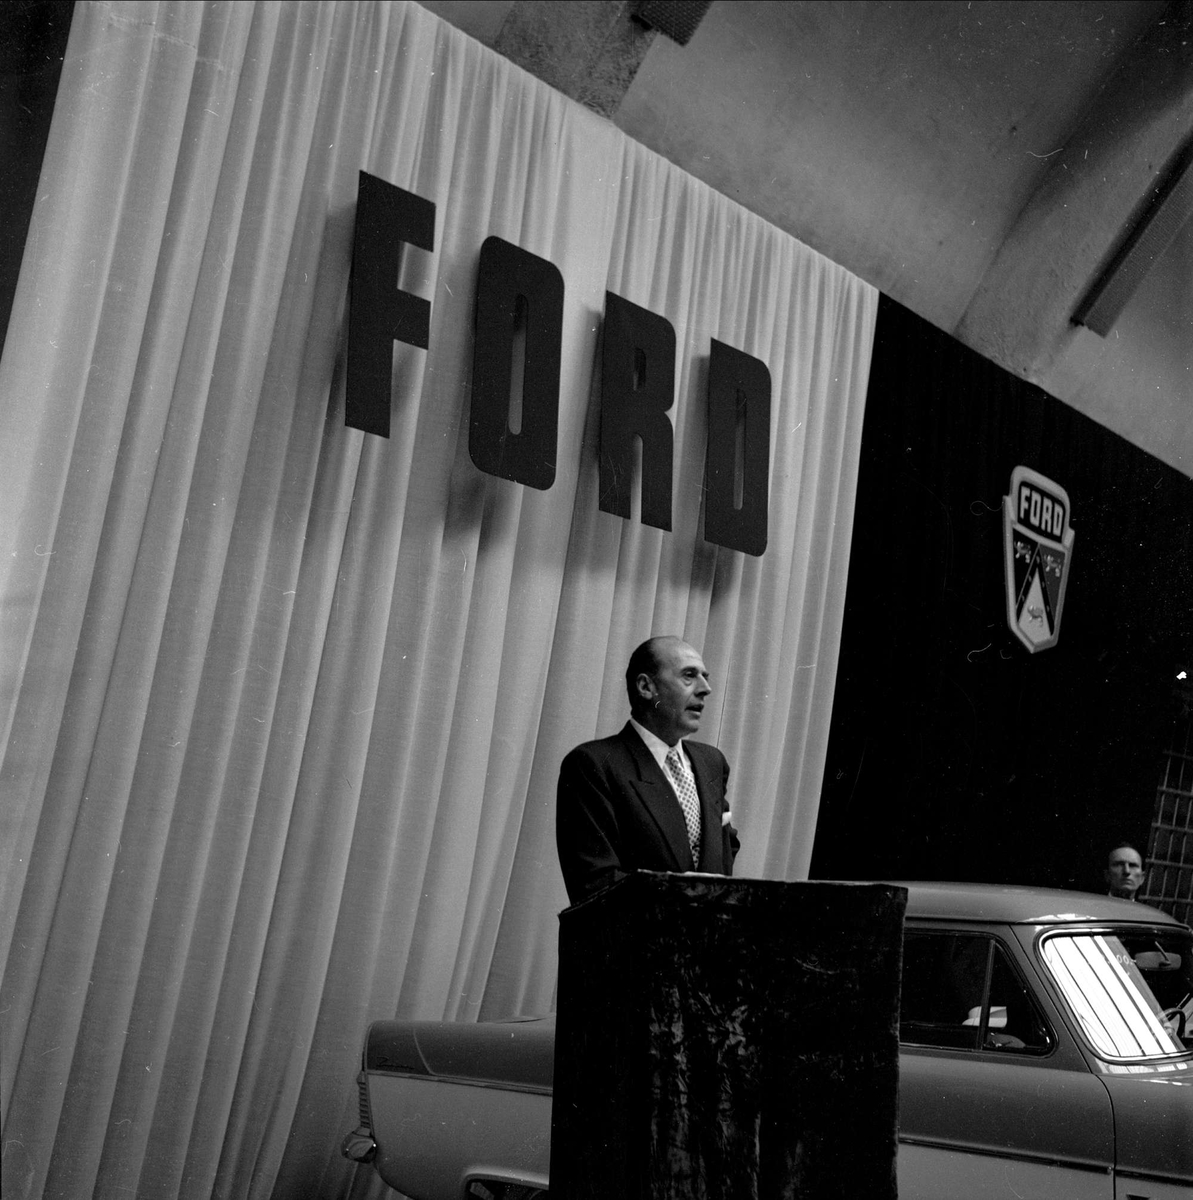 Bilutstilling, merke Ford, antakelig Oslo, 10.09.1956. Mann taler, kanskje nybilpresentasjon.